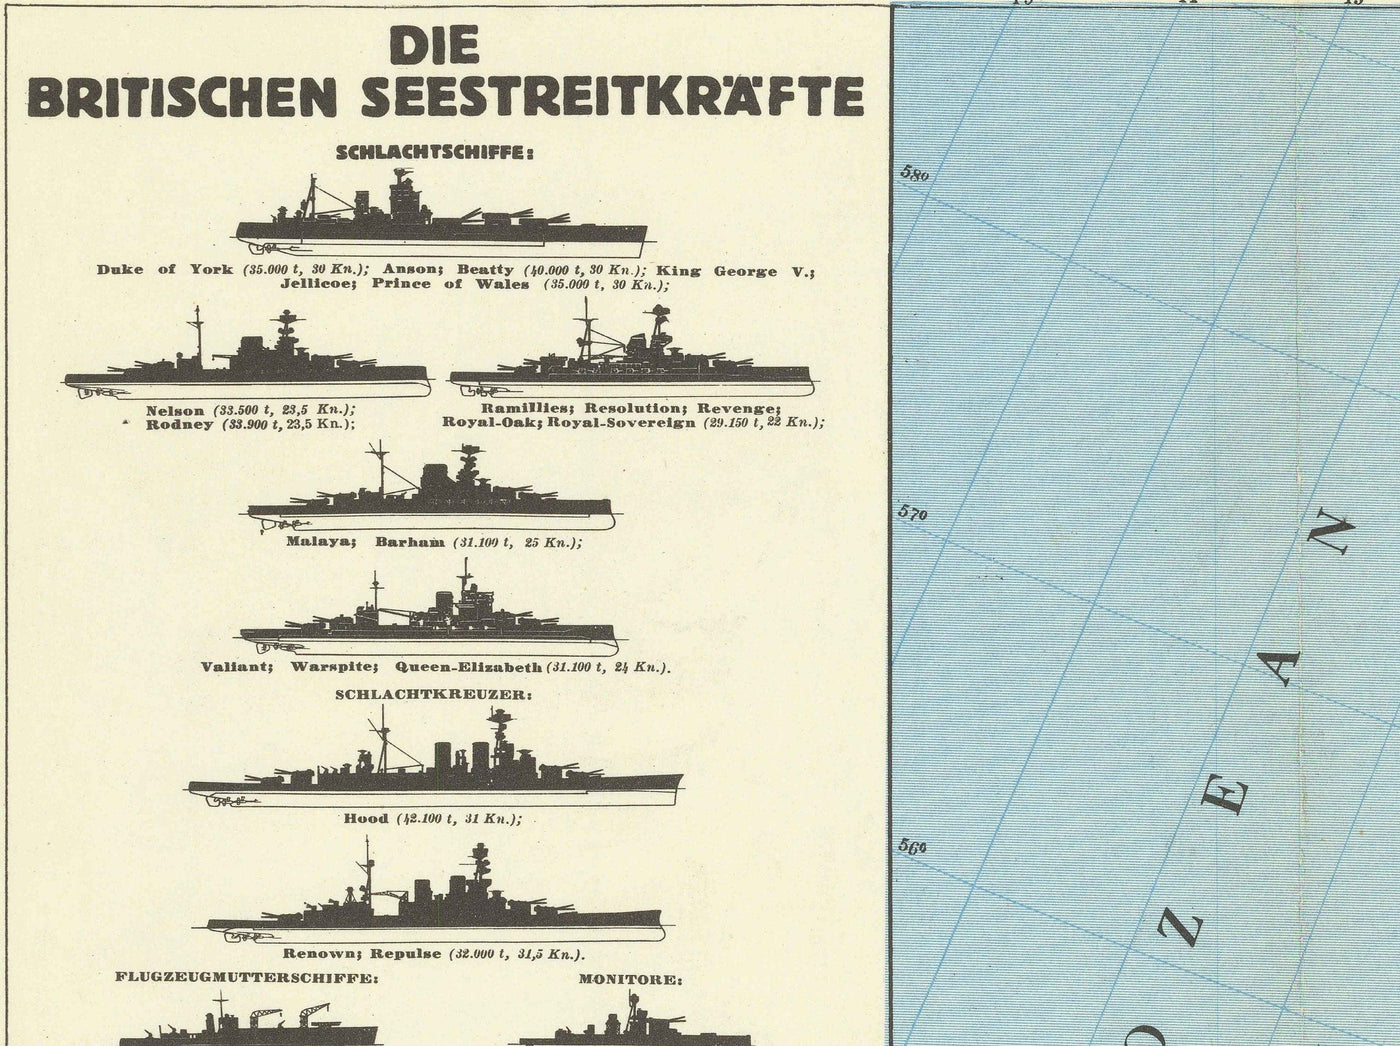 Deutsche Karte des 2. Weltkriegs, 1940 - Alte WW2-Militärkarte der Nordsee - Schiffe der britischen Marine, Minenfelder, Kampflinien